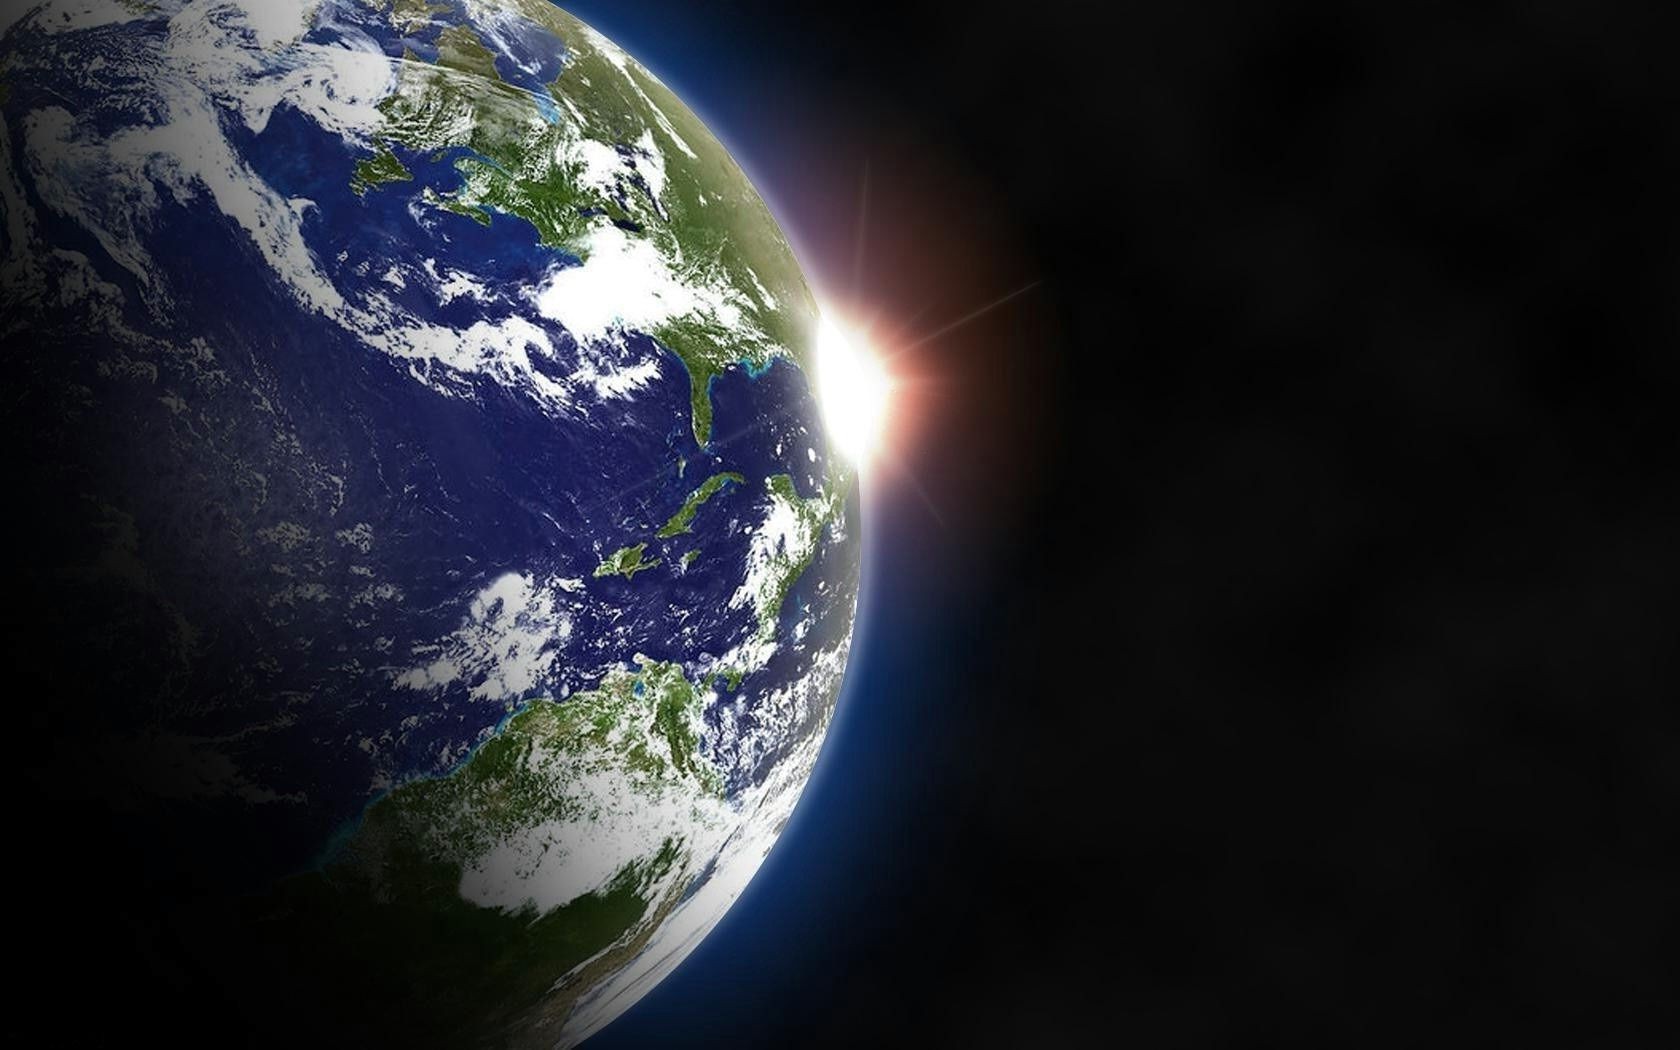 виды земли из космоса шарообразные планеты карте сферически вселенная география континент сфера атмосфера картографии астрономия путешествия топография пространство луна орбиты наука разведка